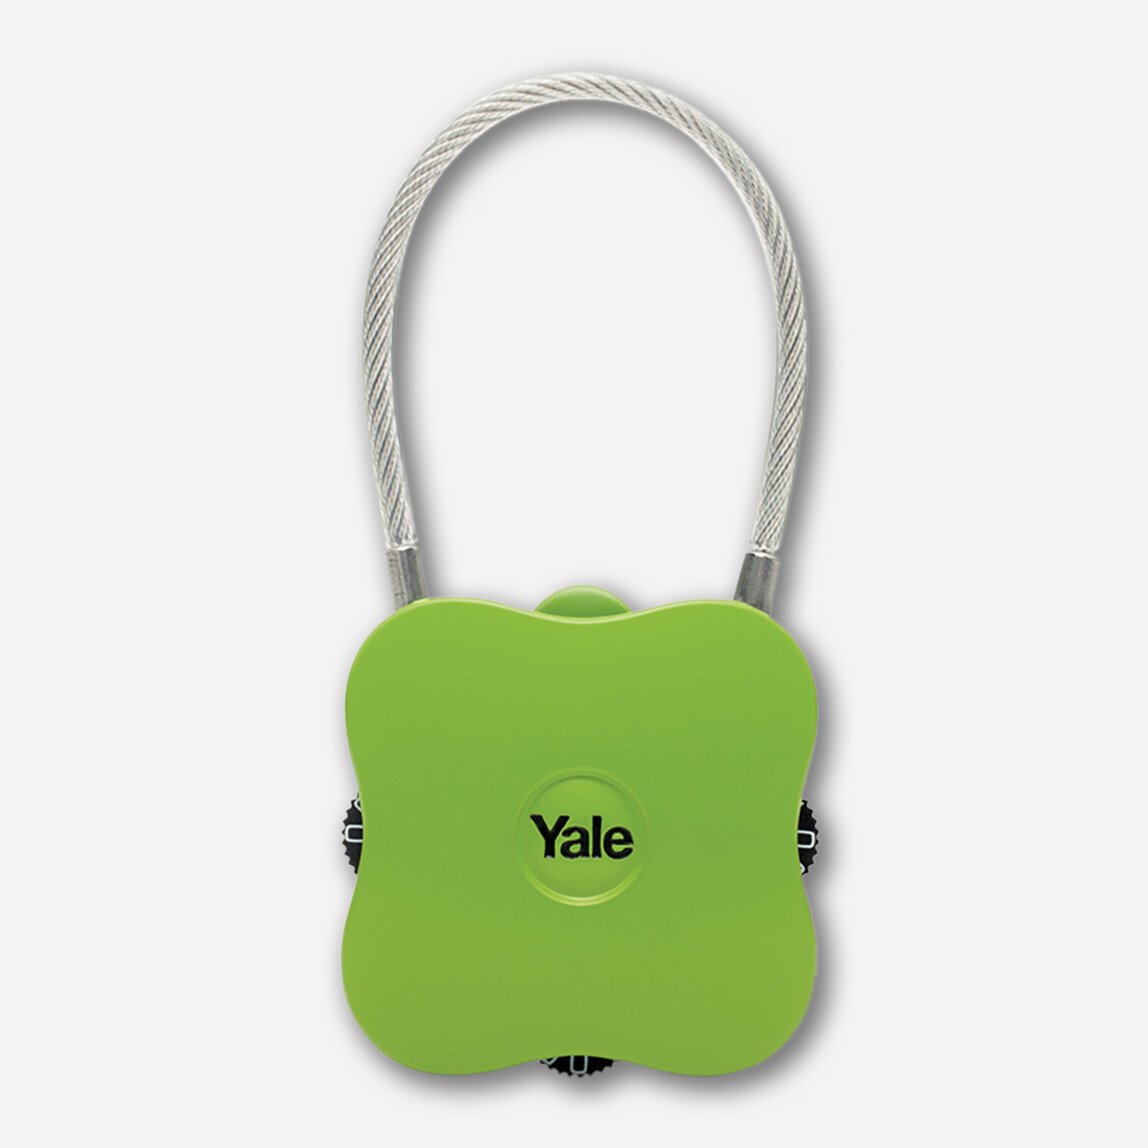    Yale Şifreli Asmalı Kilit - Yeşil  